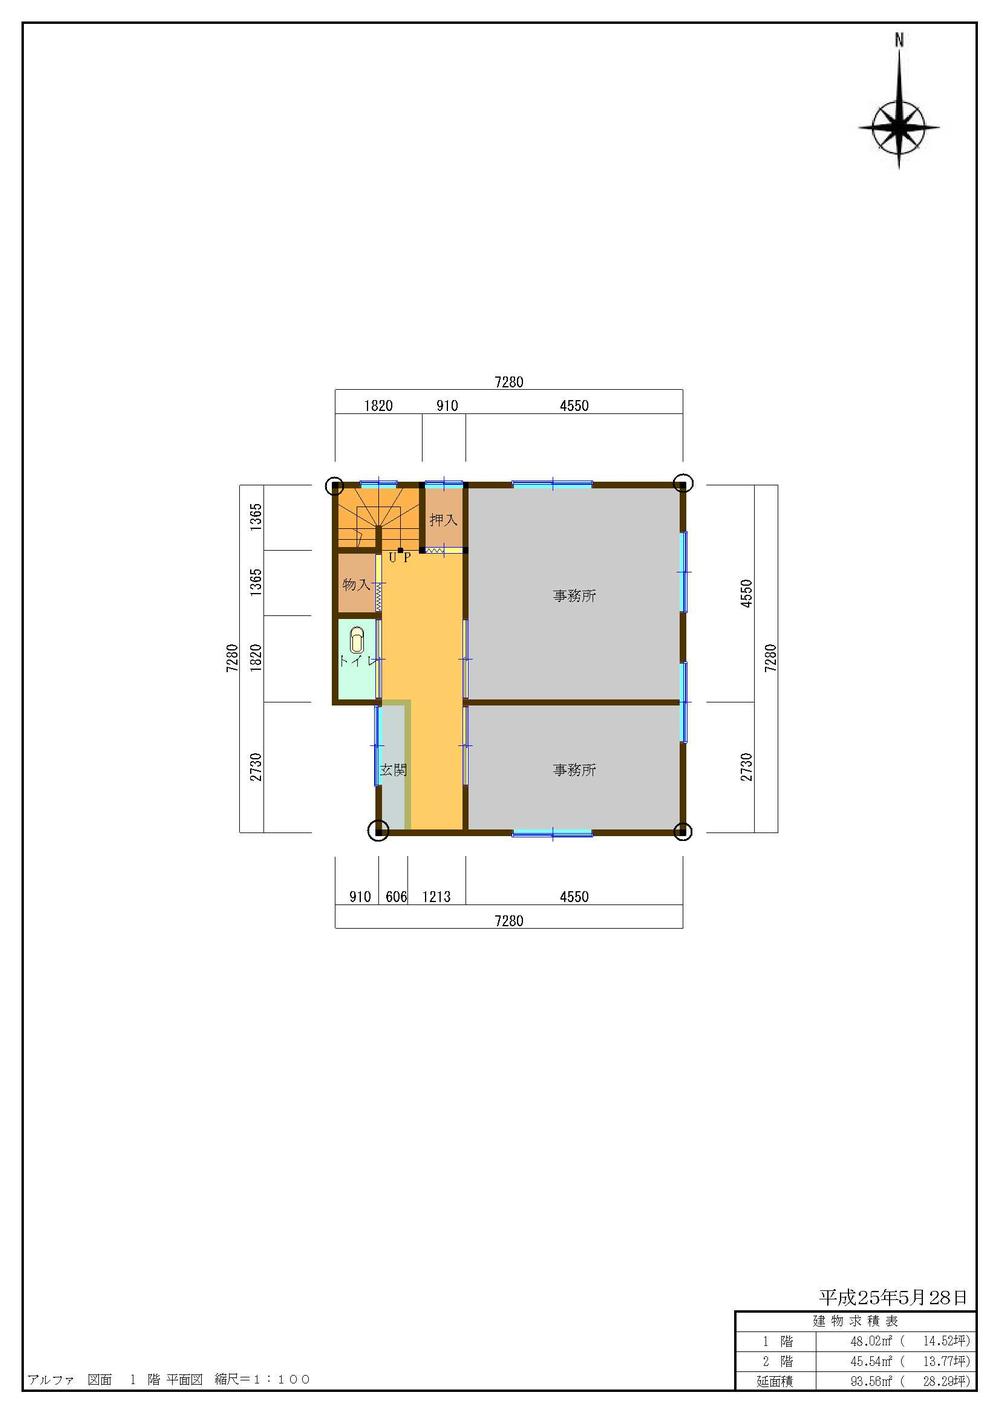 Floor plan. 8.2 million yen, 4K, Land area 89.26 sq m , Building area 101.02 sq m